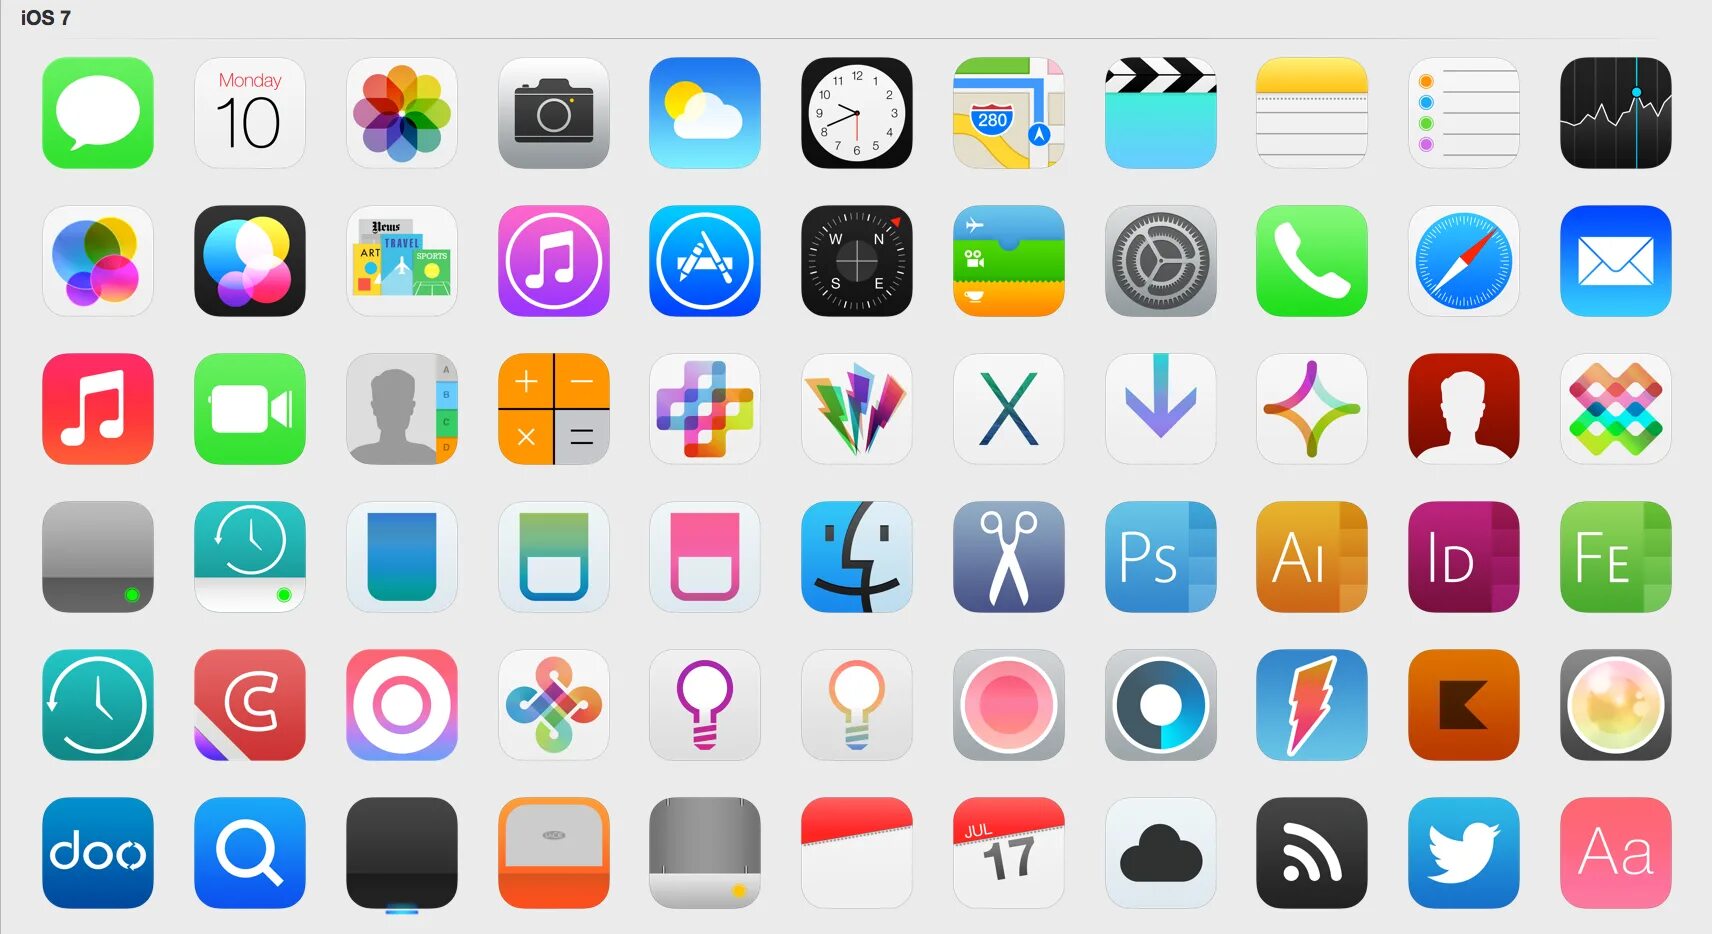 Айфон иконка. Иконки для приложений. Иконки приложений Apple. Красивые иконки для приложений. Значки на рабочем экране телефона